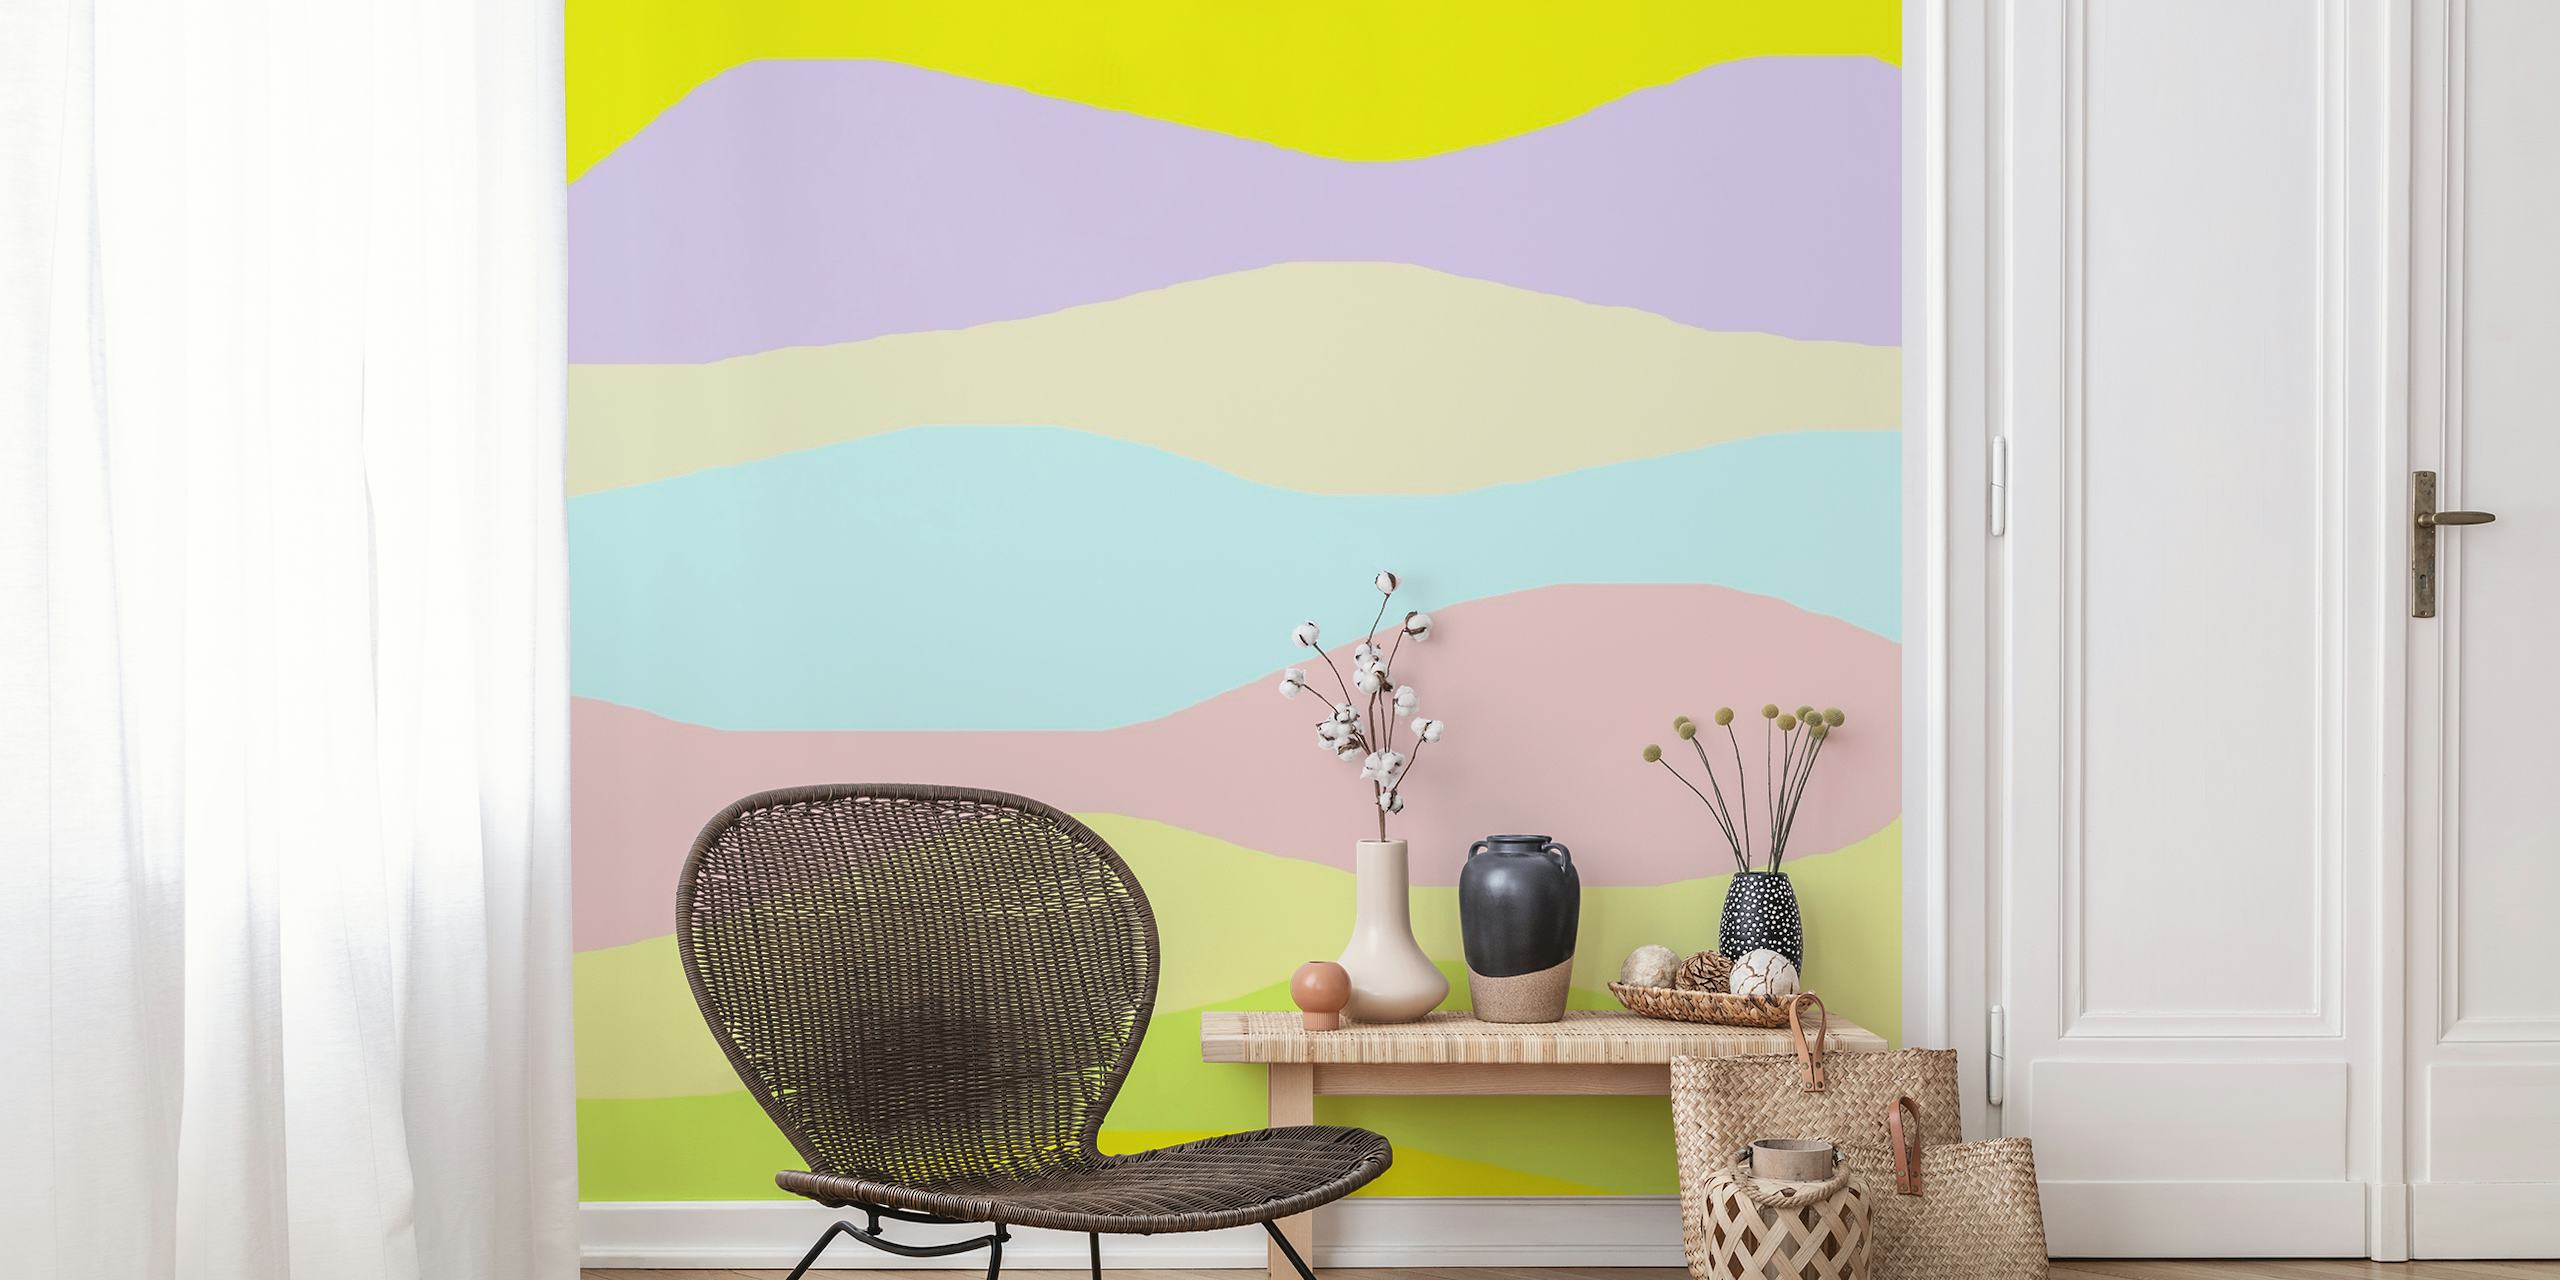 Zidna slika s valovima u pastelnim bojama za spokojnu kućnu atmosferu